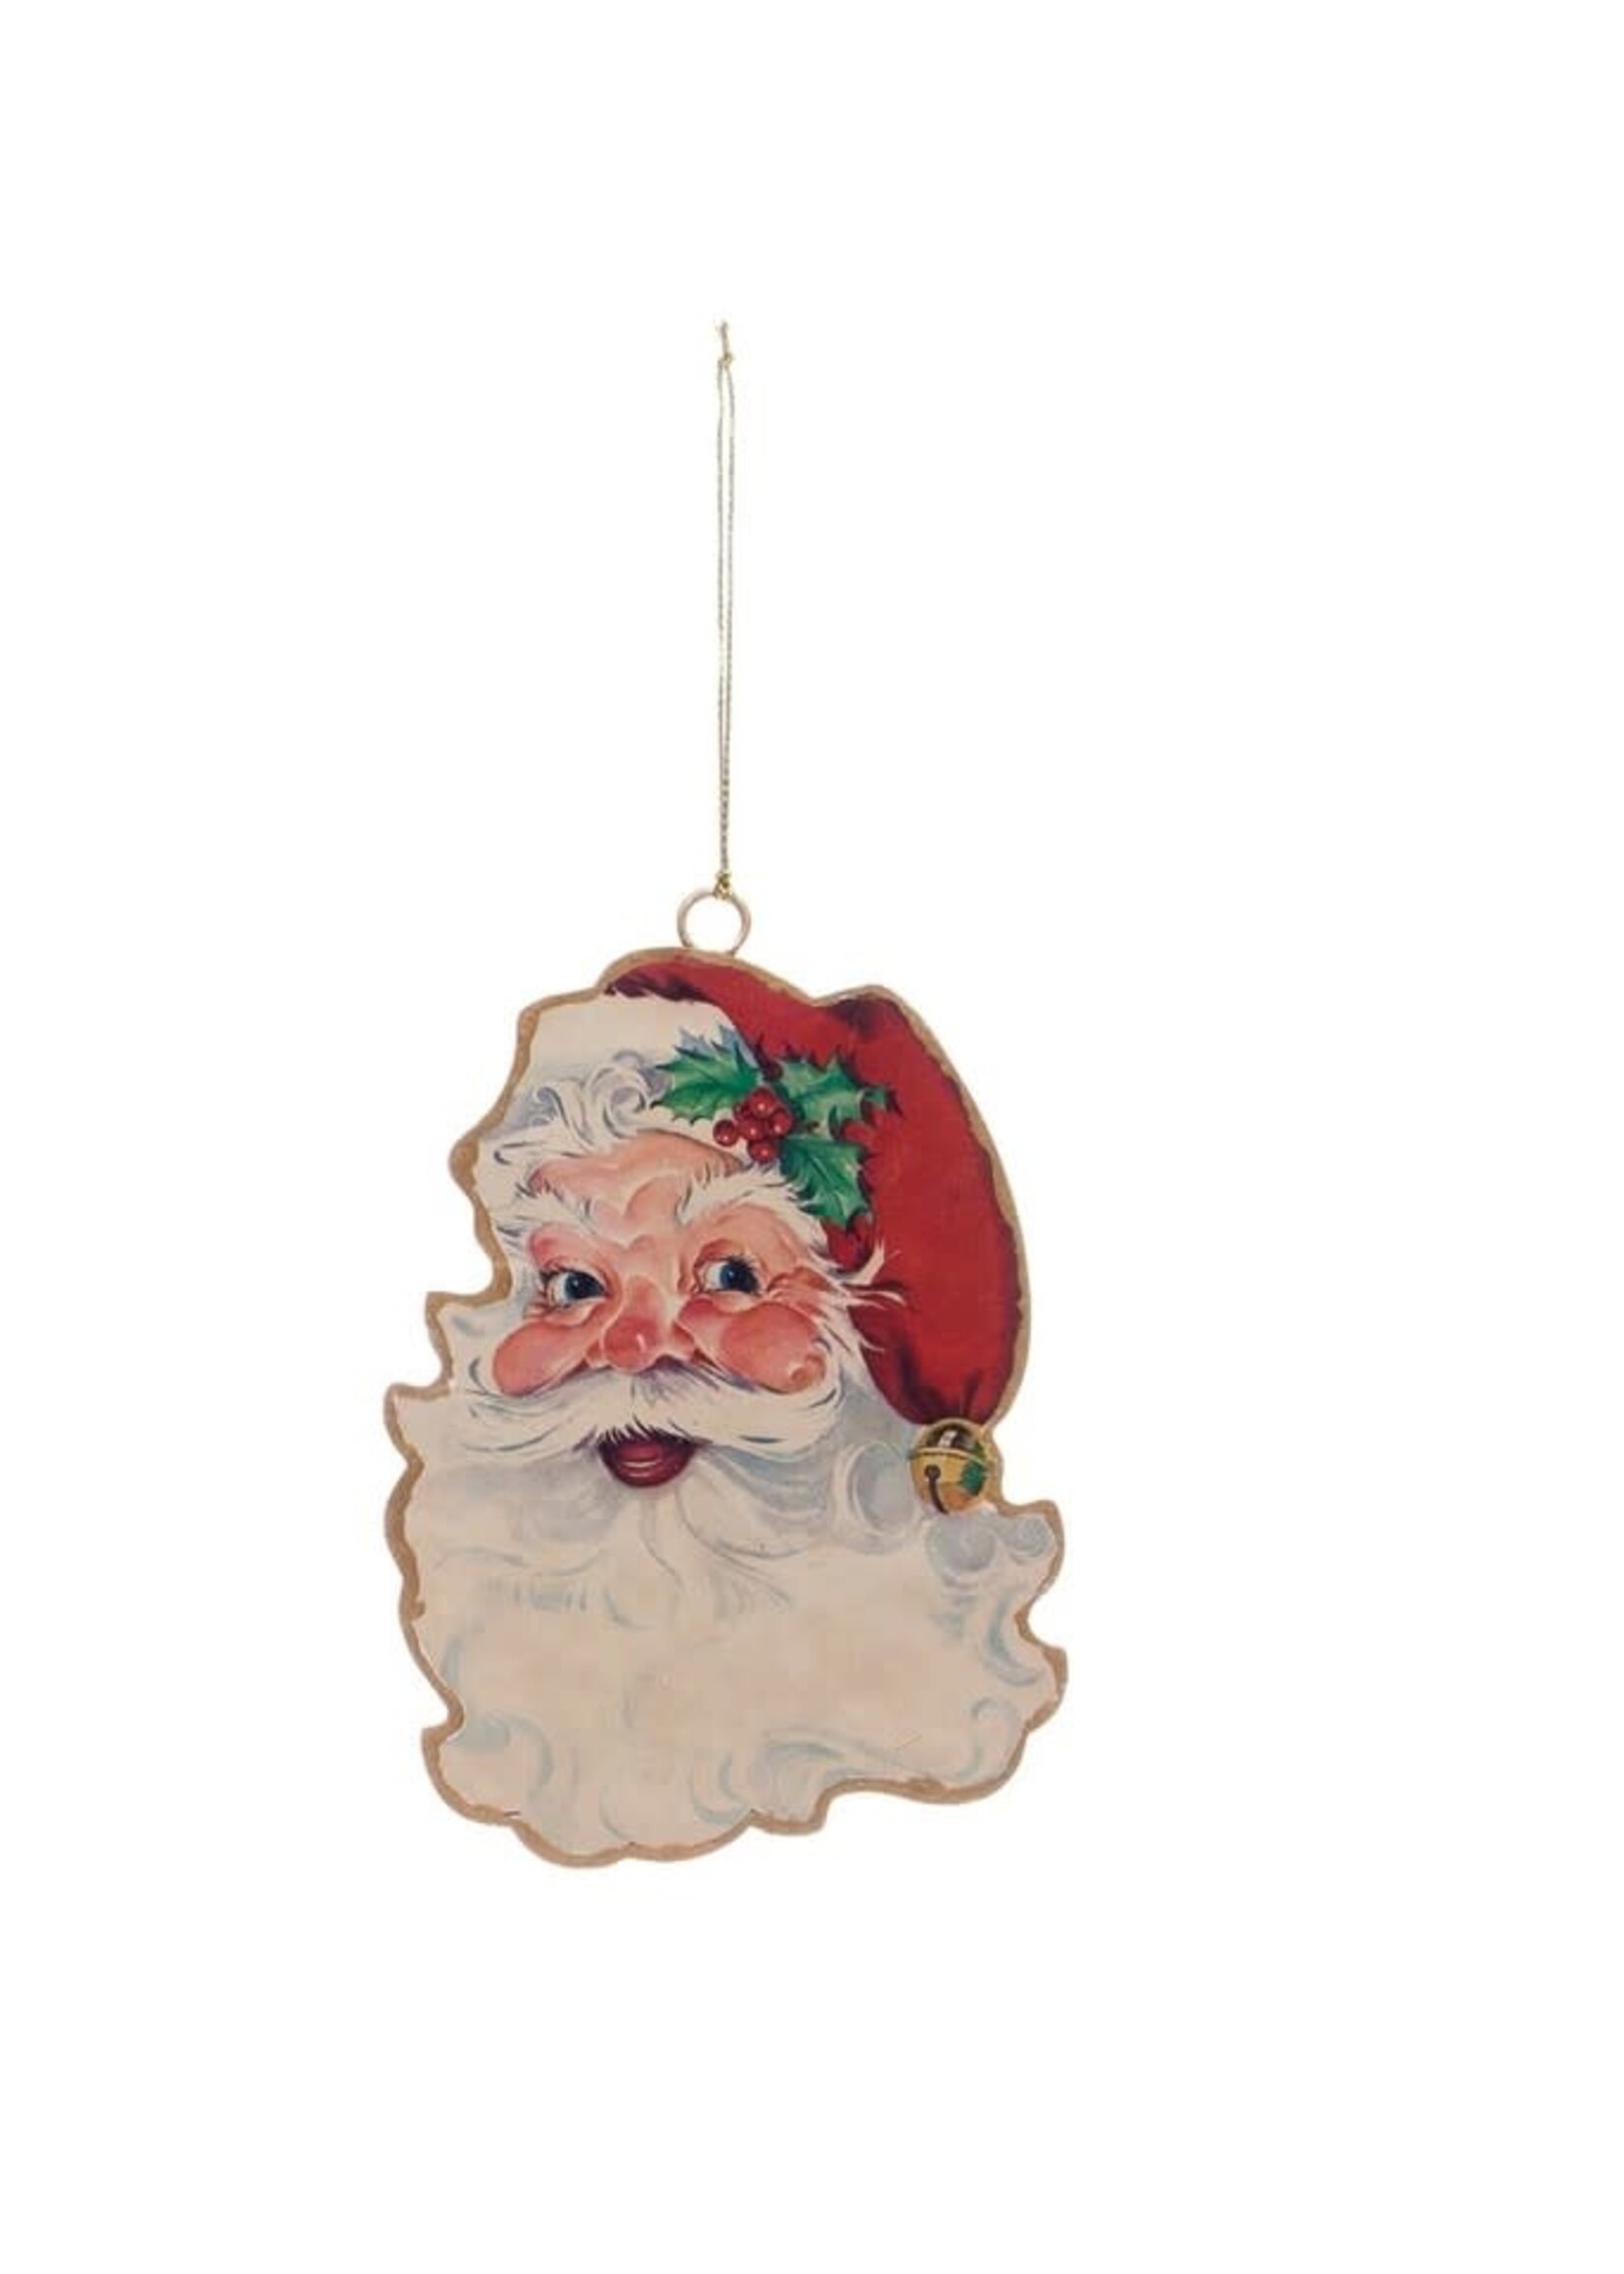 Vintage 2-Sided Metal Santa Ornament